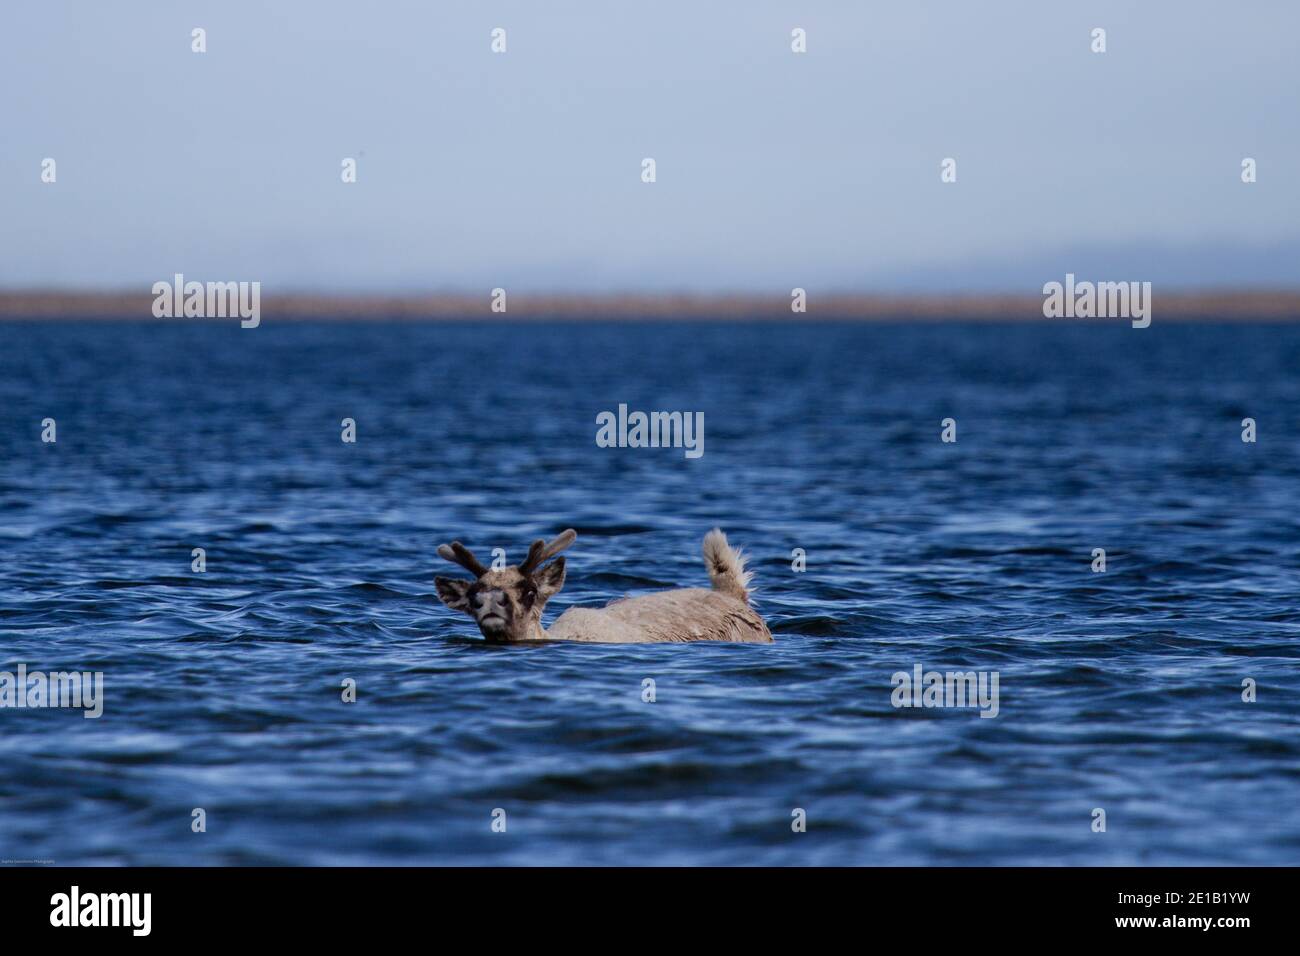 rangifer tarandus groenlandicus, jeune caribou de la toundra, nageant dans l'eau près d'Arviat Nunavut Banque D'Images